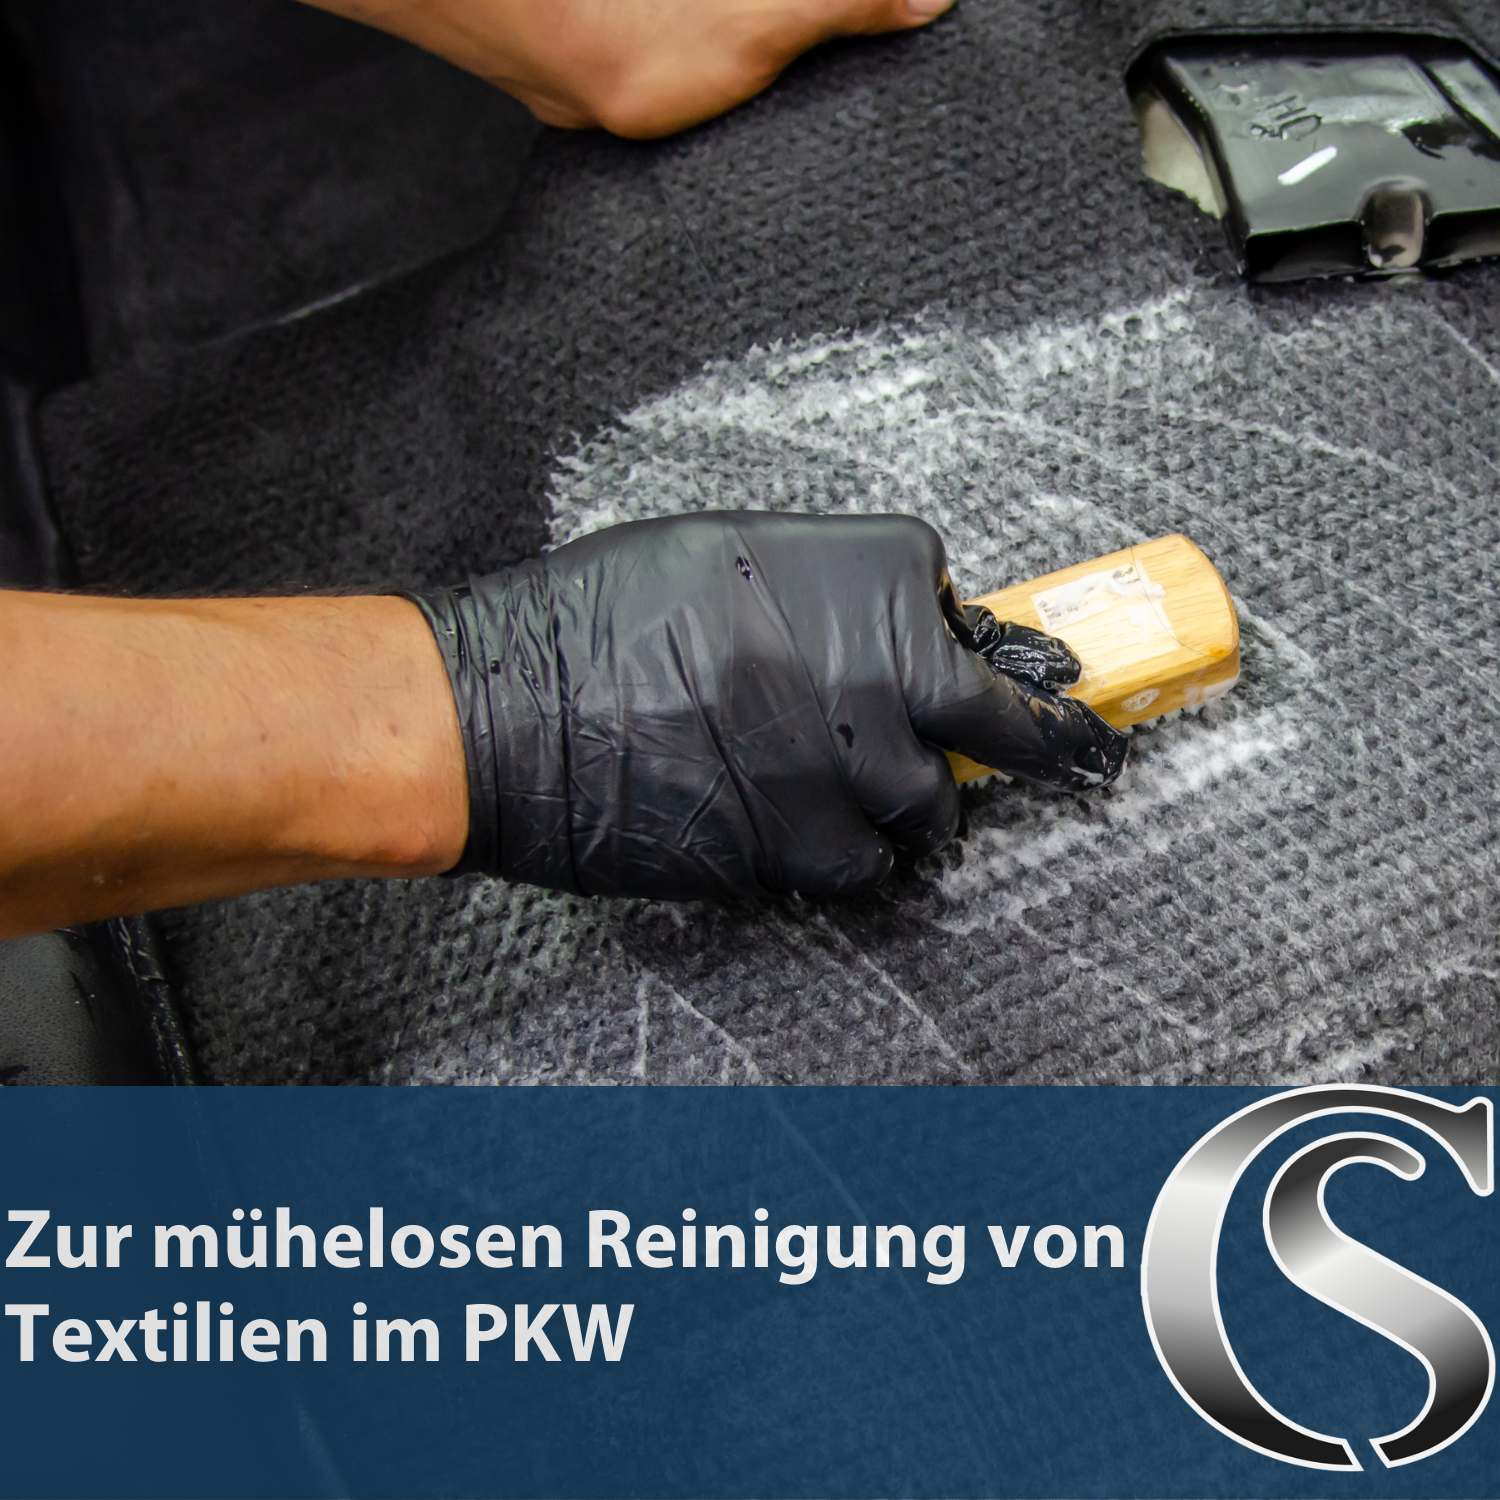 Car Sense Car Textile Cleaner - Polsterreinigung für Autoinnenraum - Autositz Reiniger, Fleckenentferner, Autopolsterreinigungsmittel hochwirksam & materialschonend